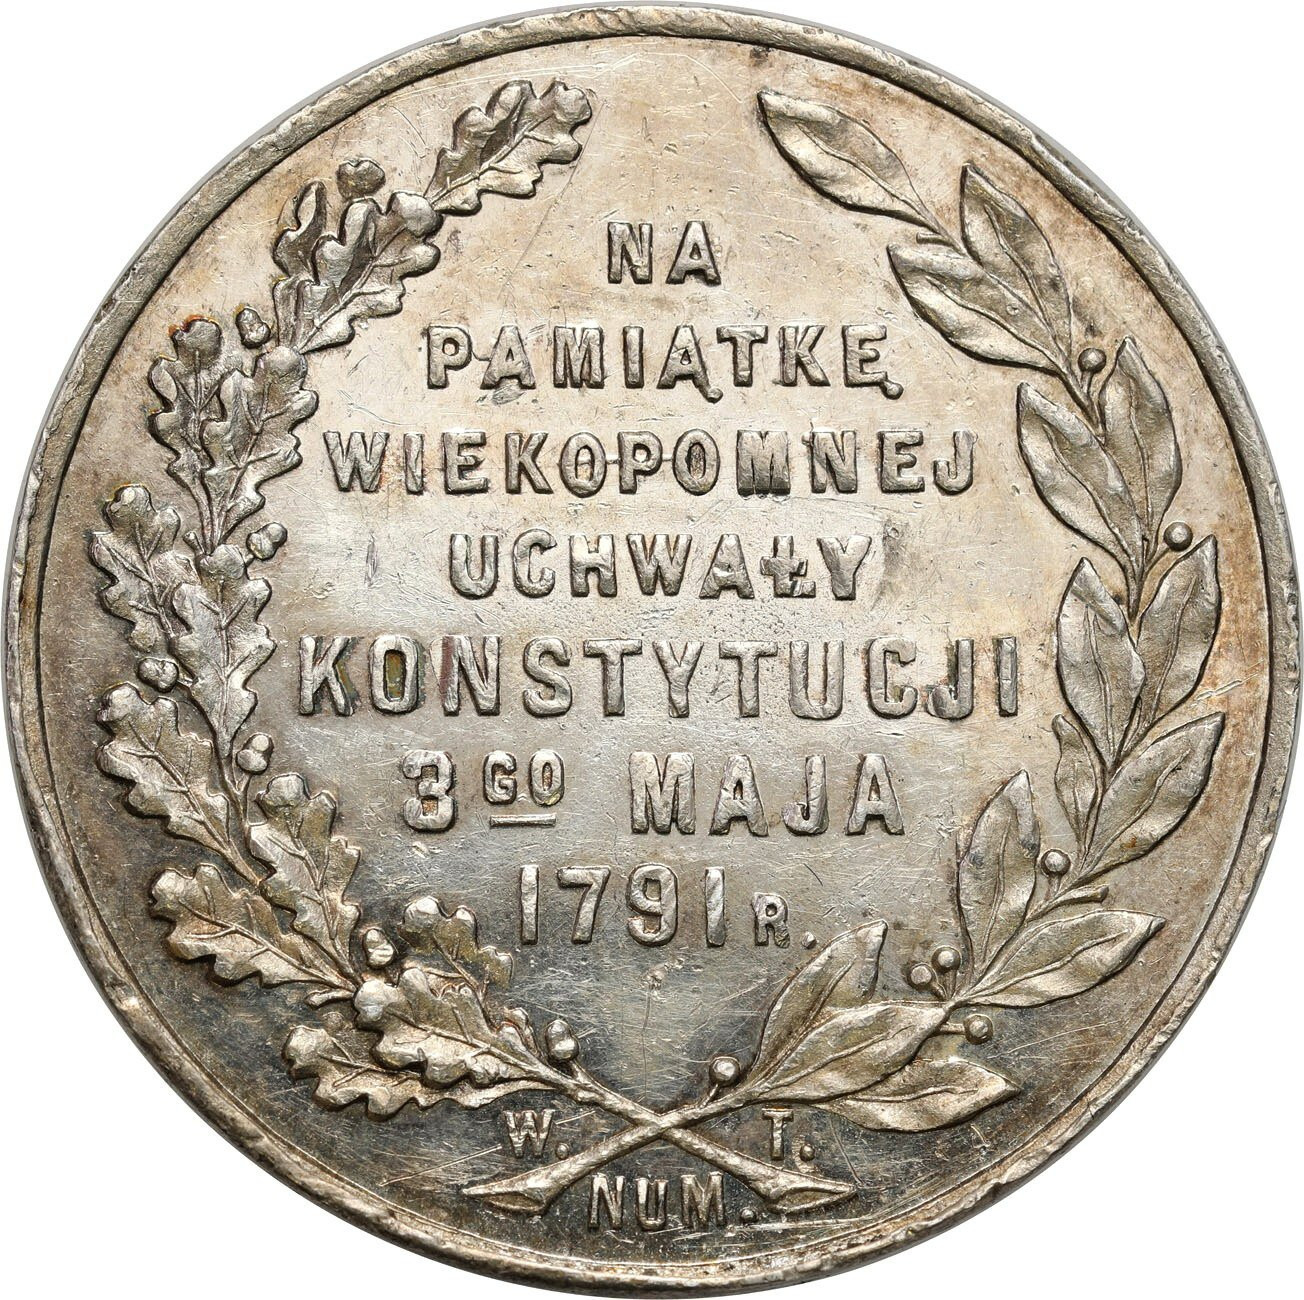 Polska. Medal 1916 - 125 lat Konstytucji 3-go maja - PIĘKNY